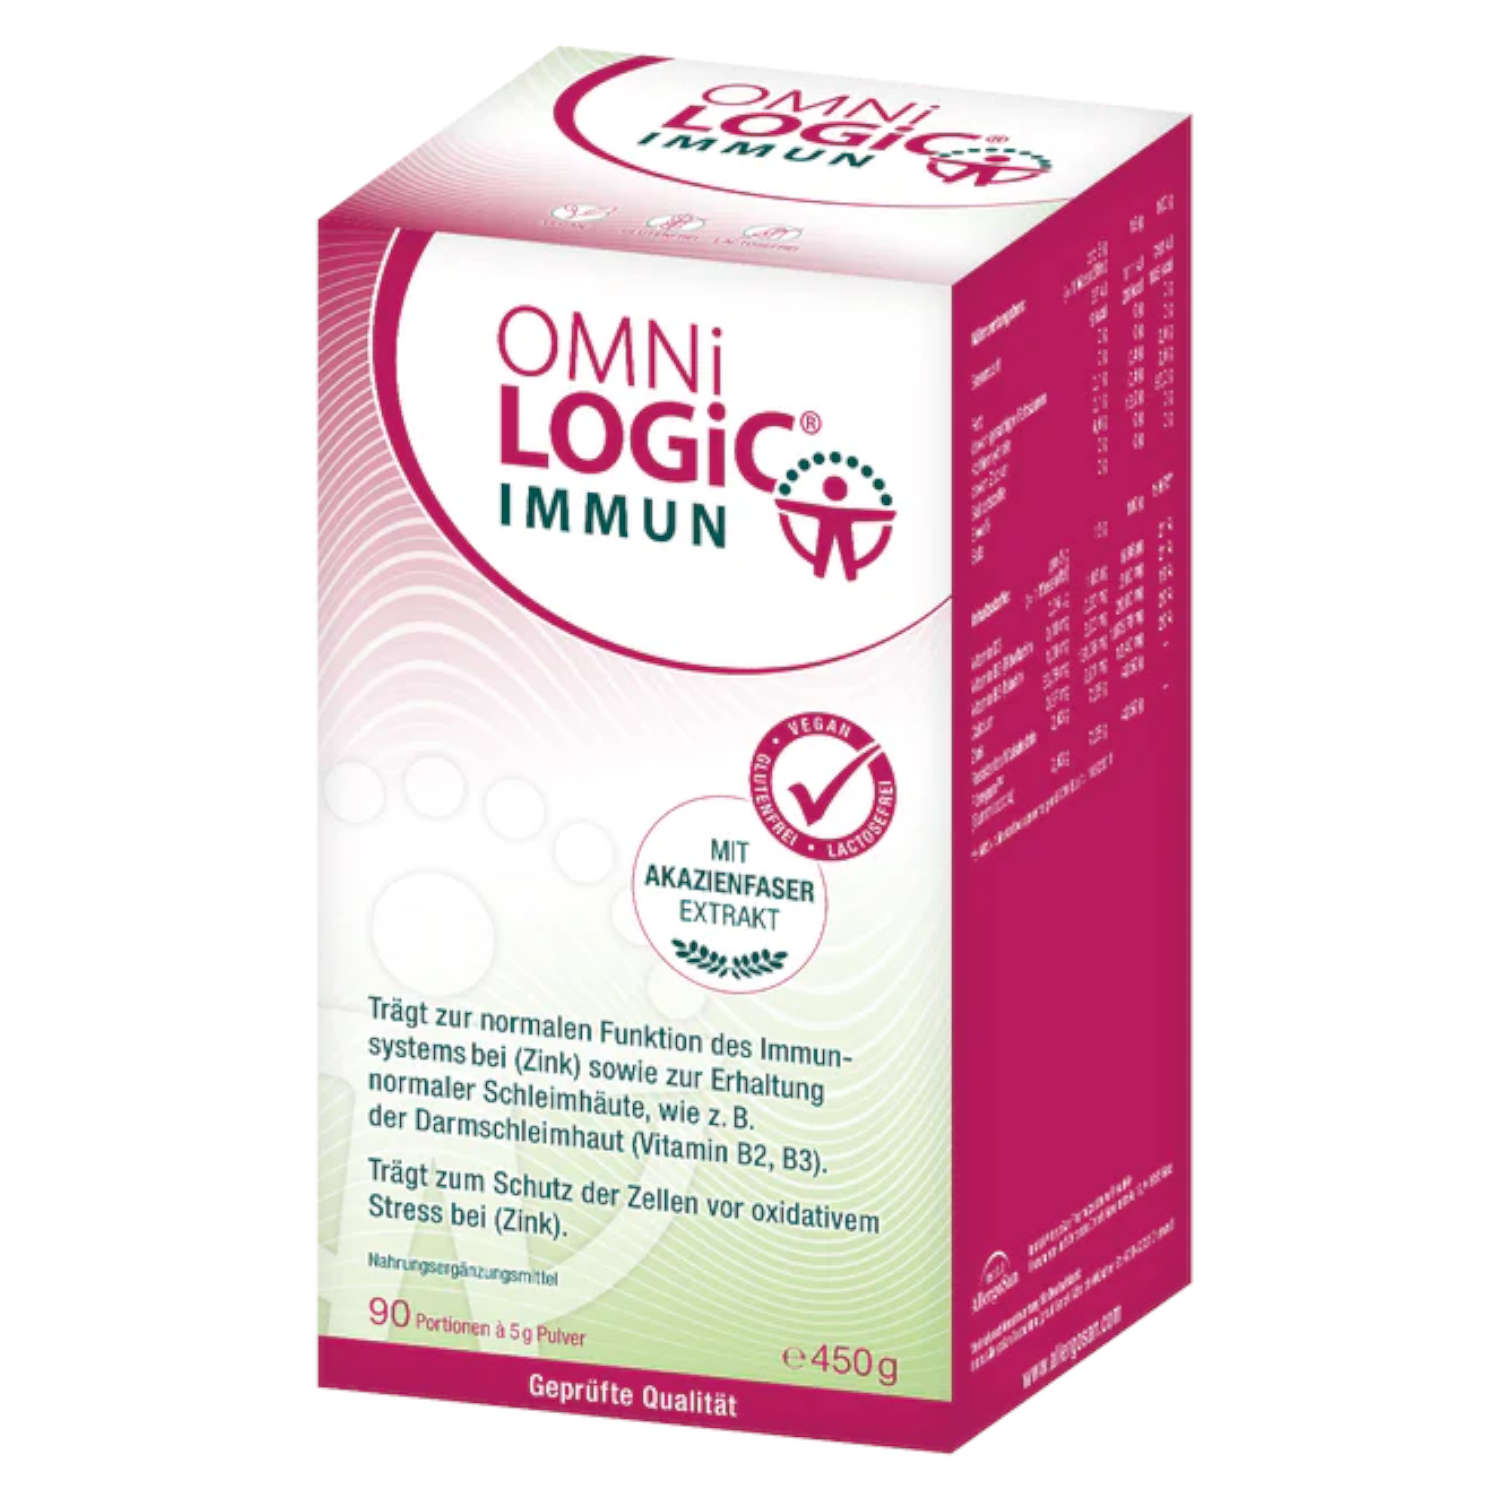 OMNi-LOGiC® IMMUN von Allergosan - 450 g